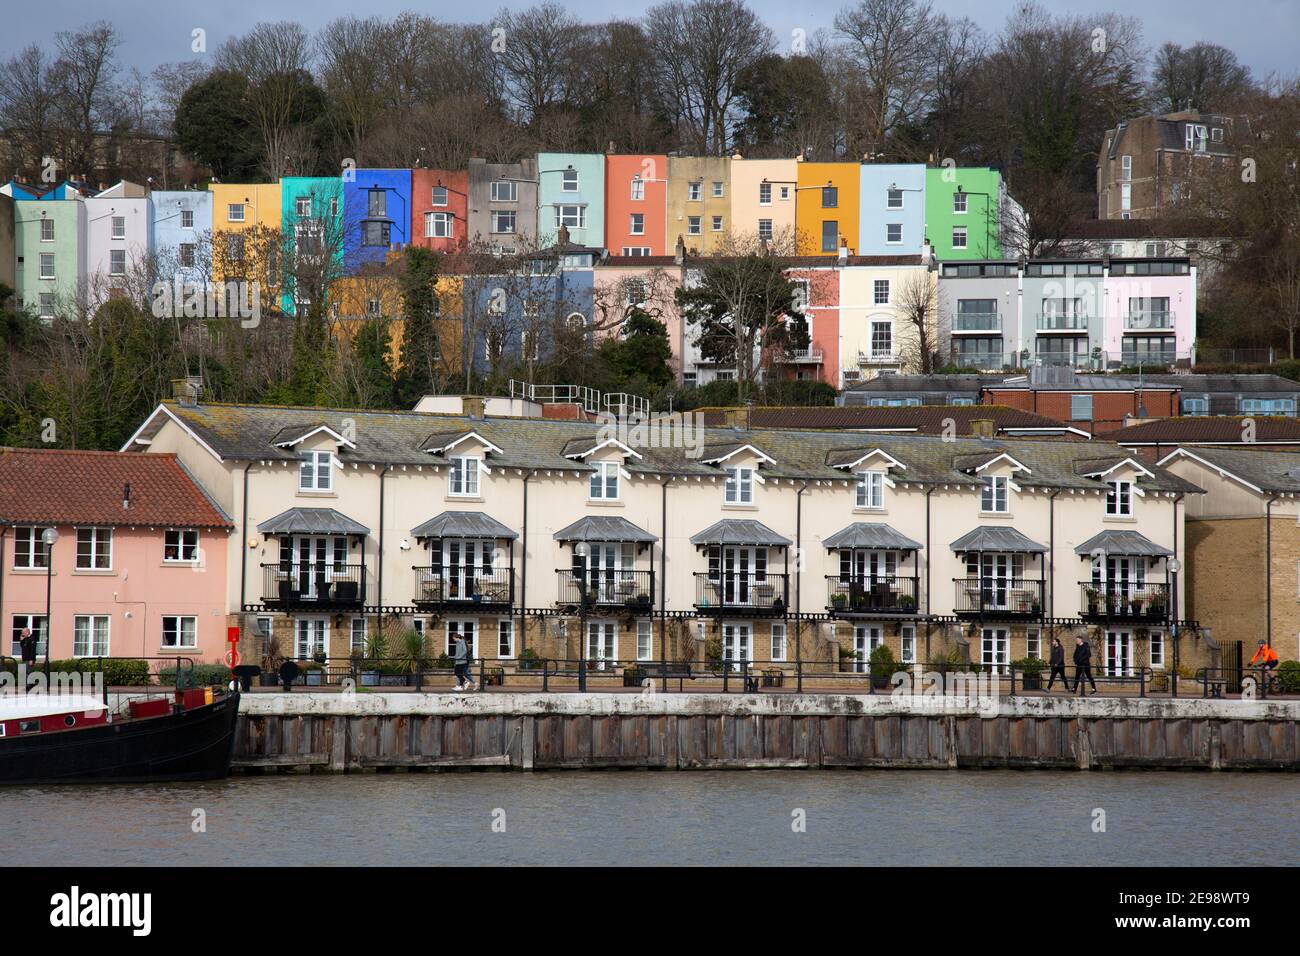 Vista al otro lado del río Avon en Bristol, Inglaterra, hacia modernos apartamentos junto al río, y coloridas casas adosadas antiguas detrás. Foto de stock